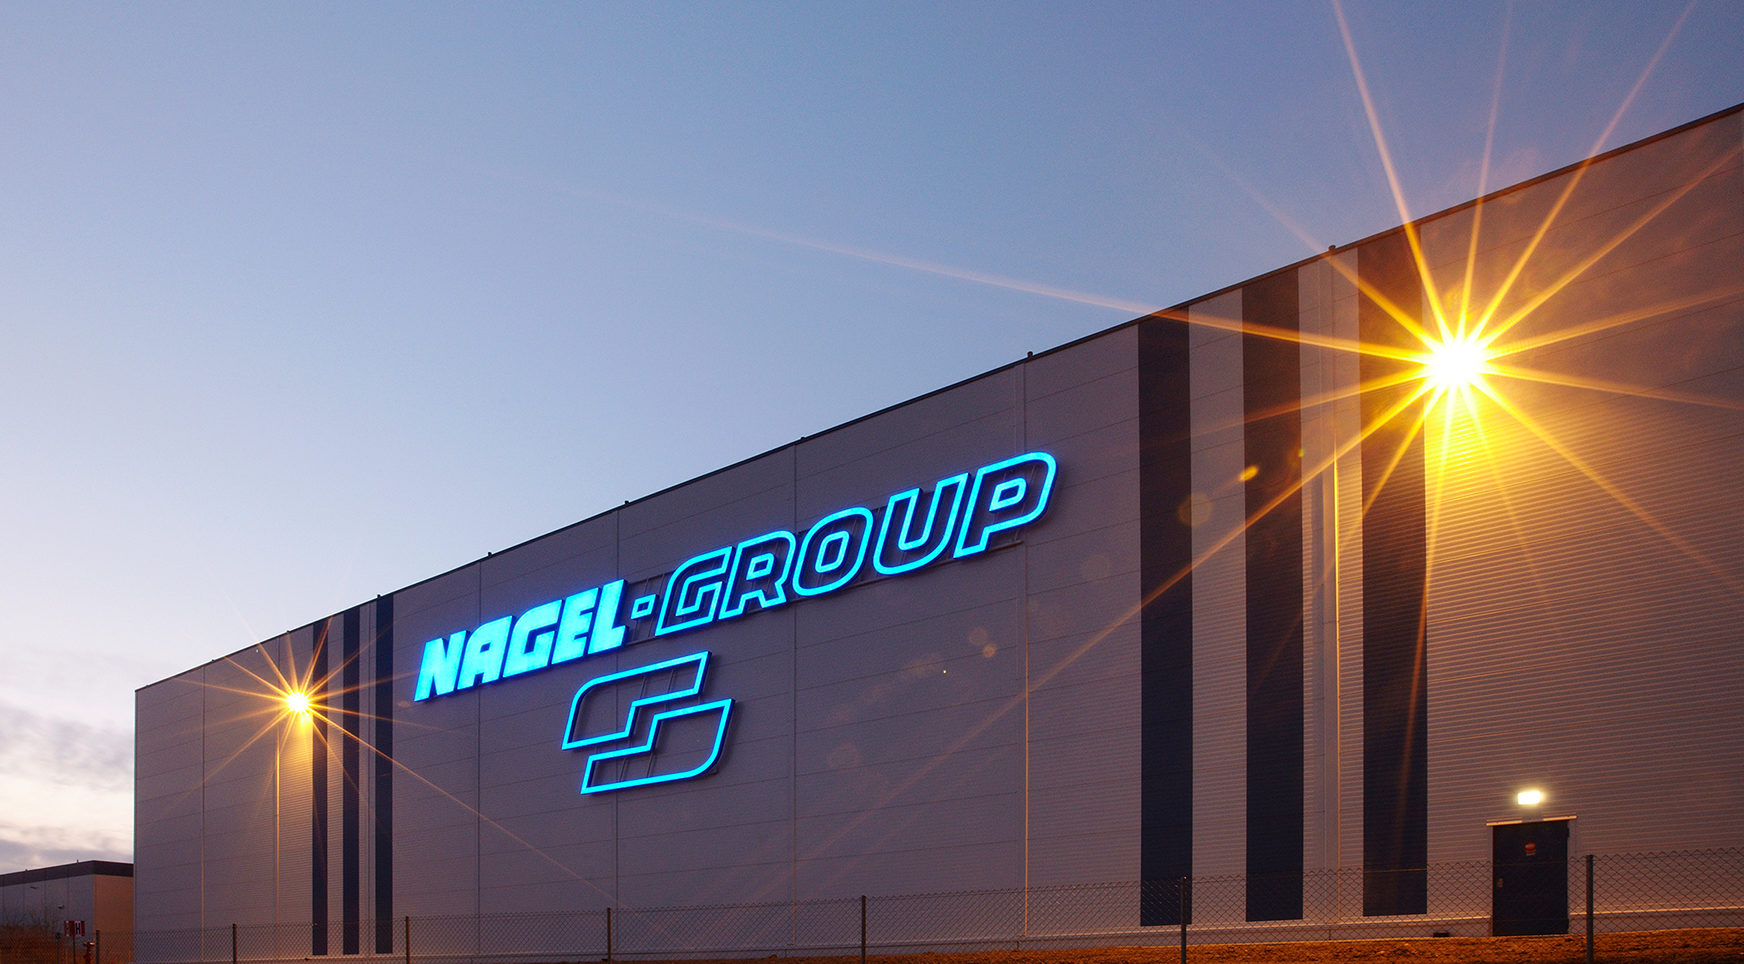 Nagel Group Waalwijk Nagel group distribution secures danish foodbev